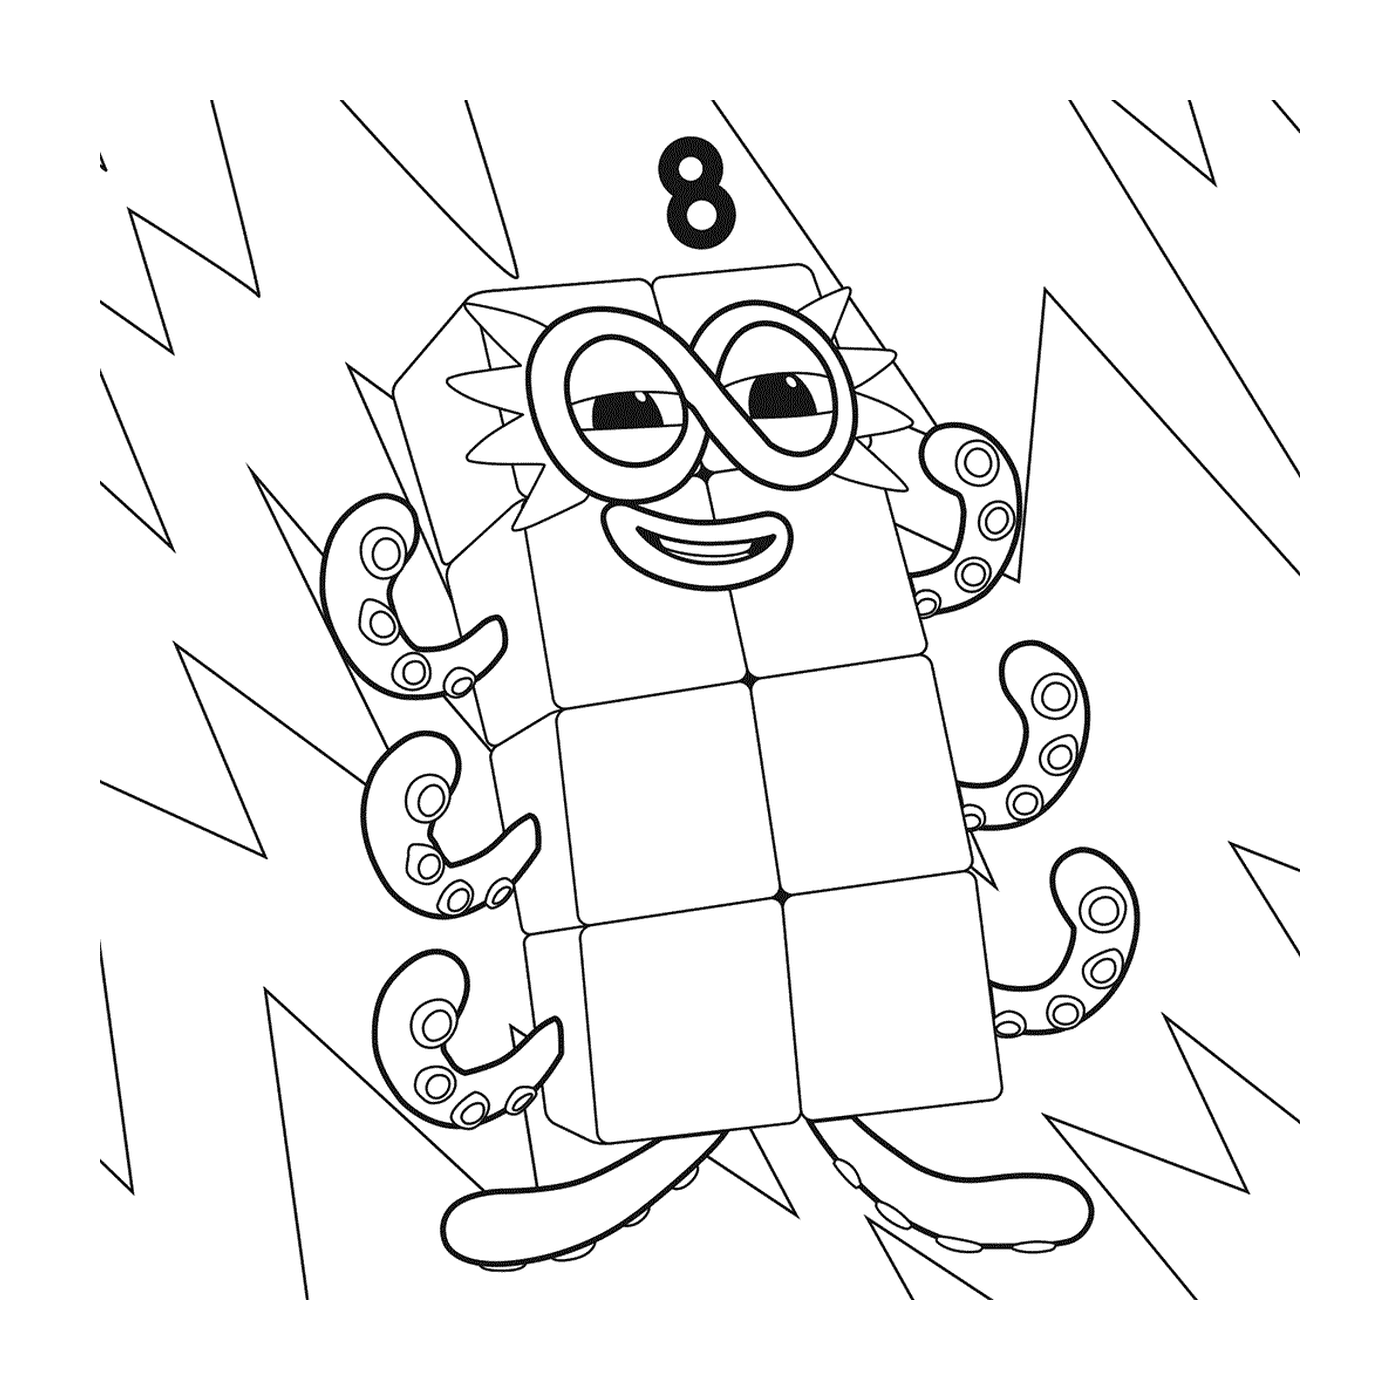   Numéro 8 des Numberblocks, un chiffre souriant 